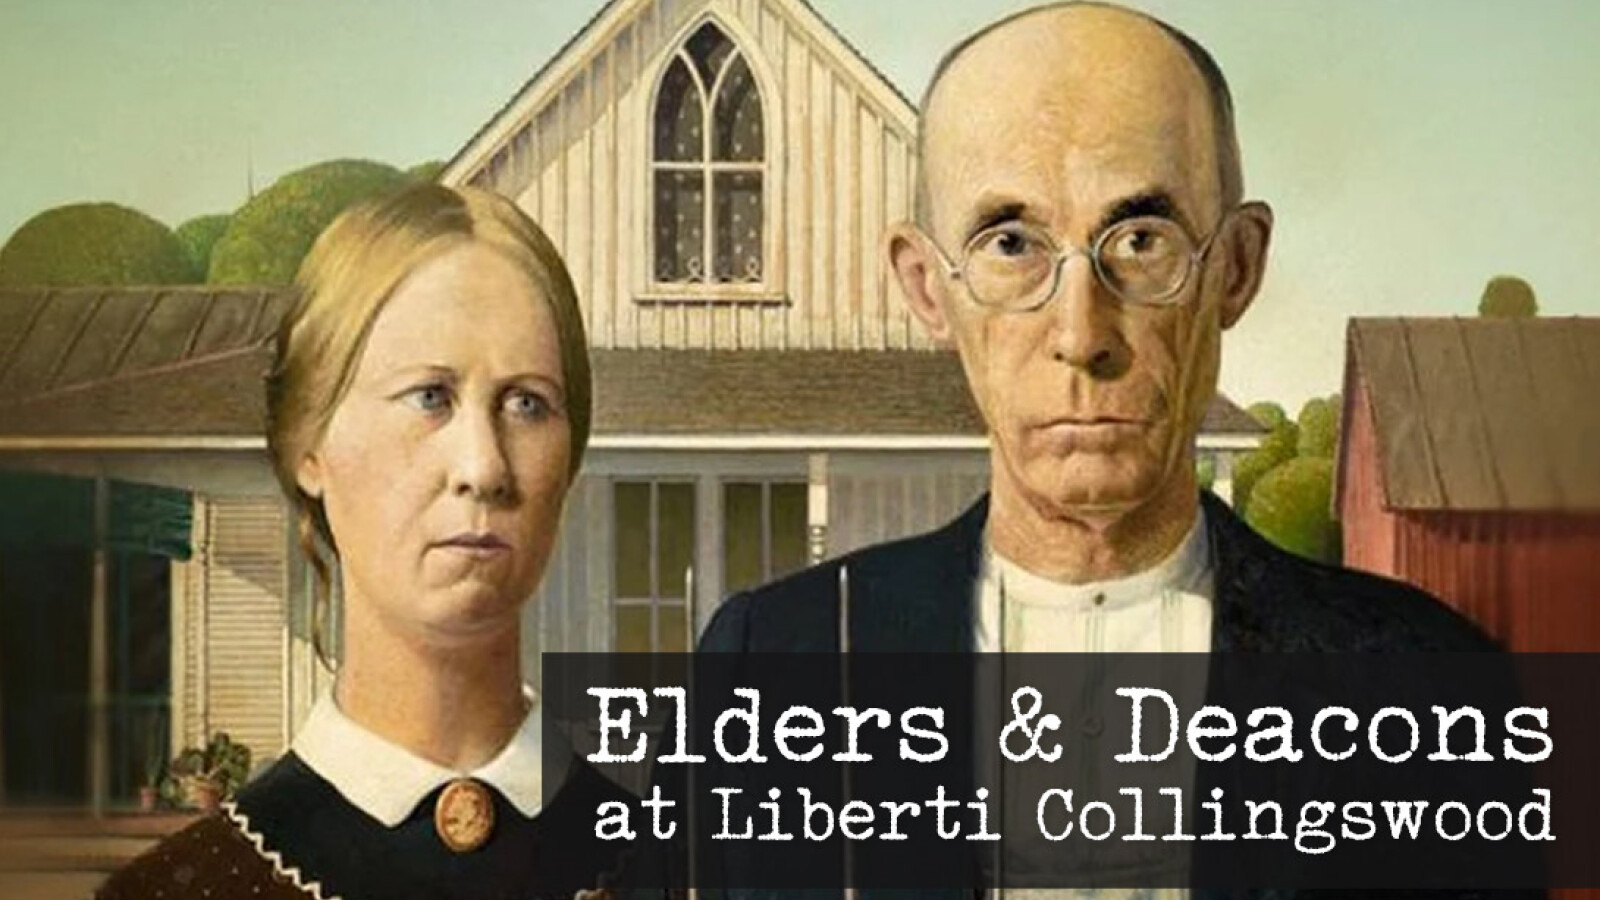 Elders & Deacons at Liberti Collingswood